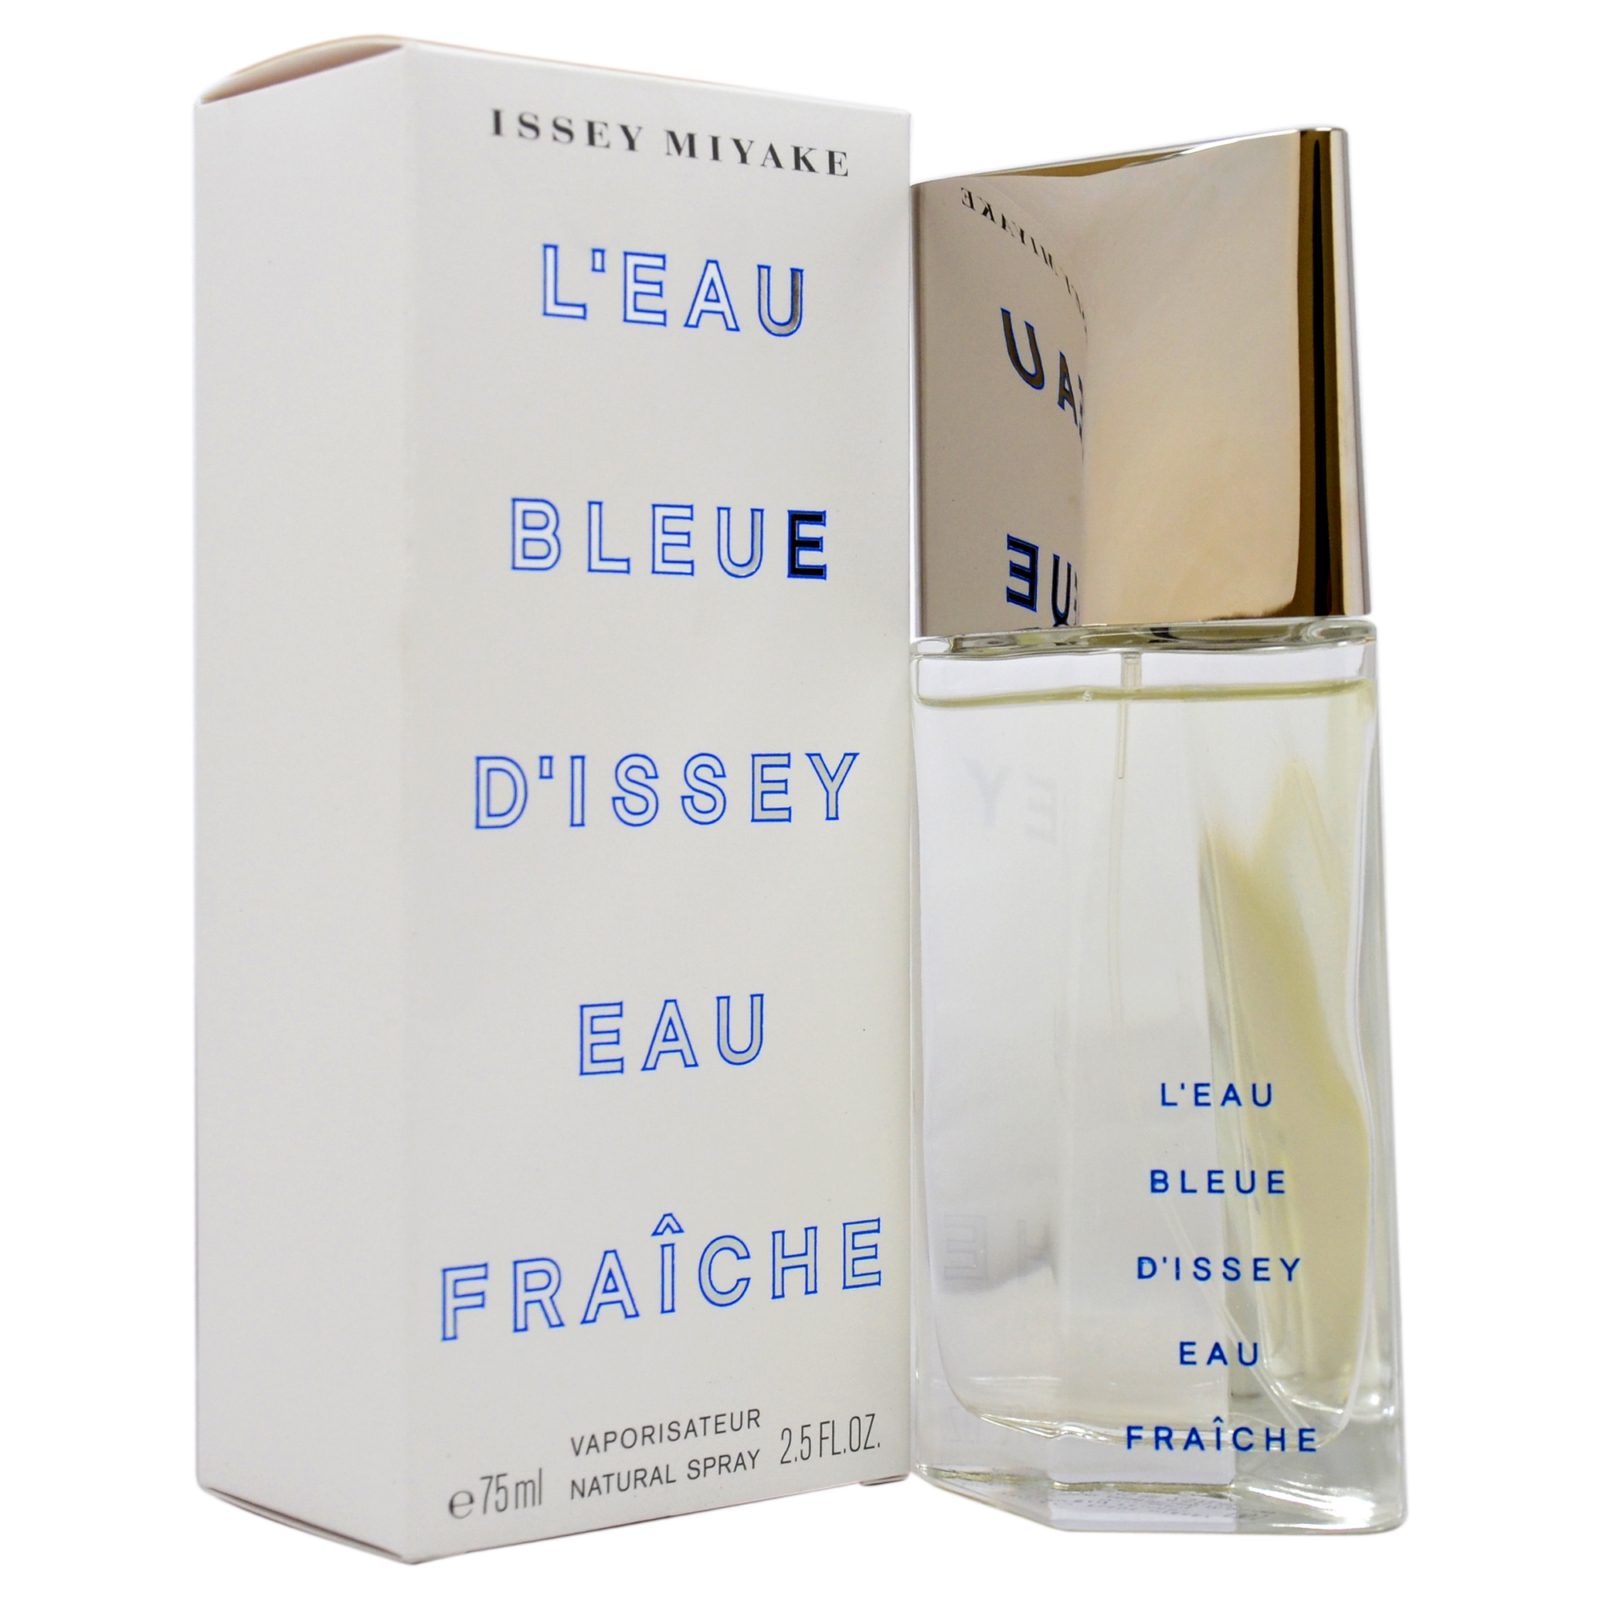 Issey miyake L'eau Bleue D'issey Eau Fraiche by for Men - 2.5 oz EDT Spray